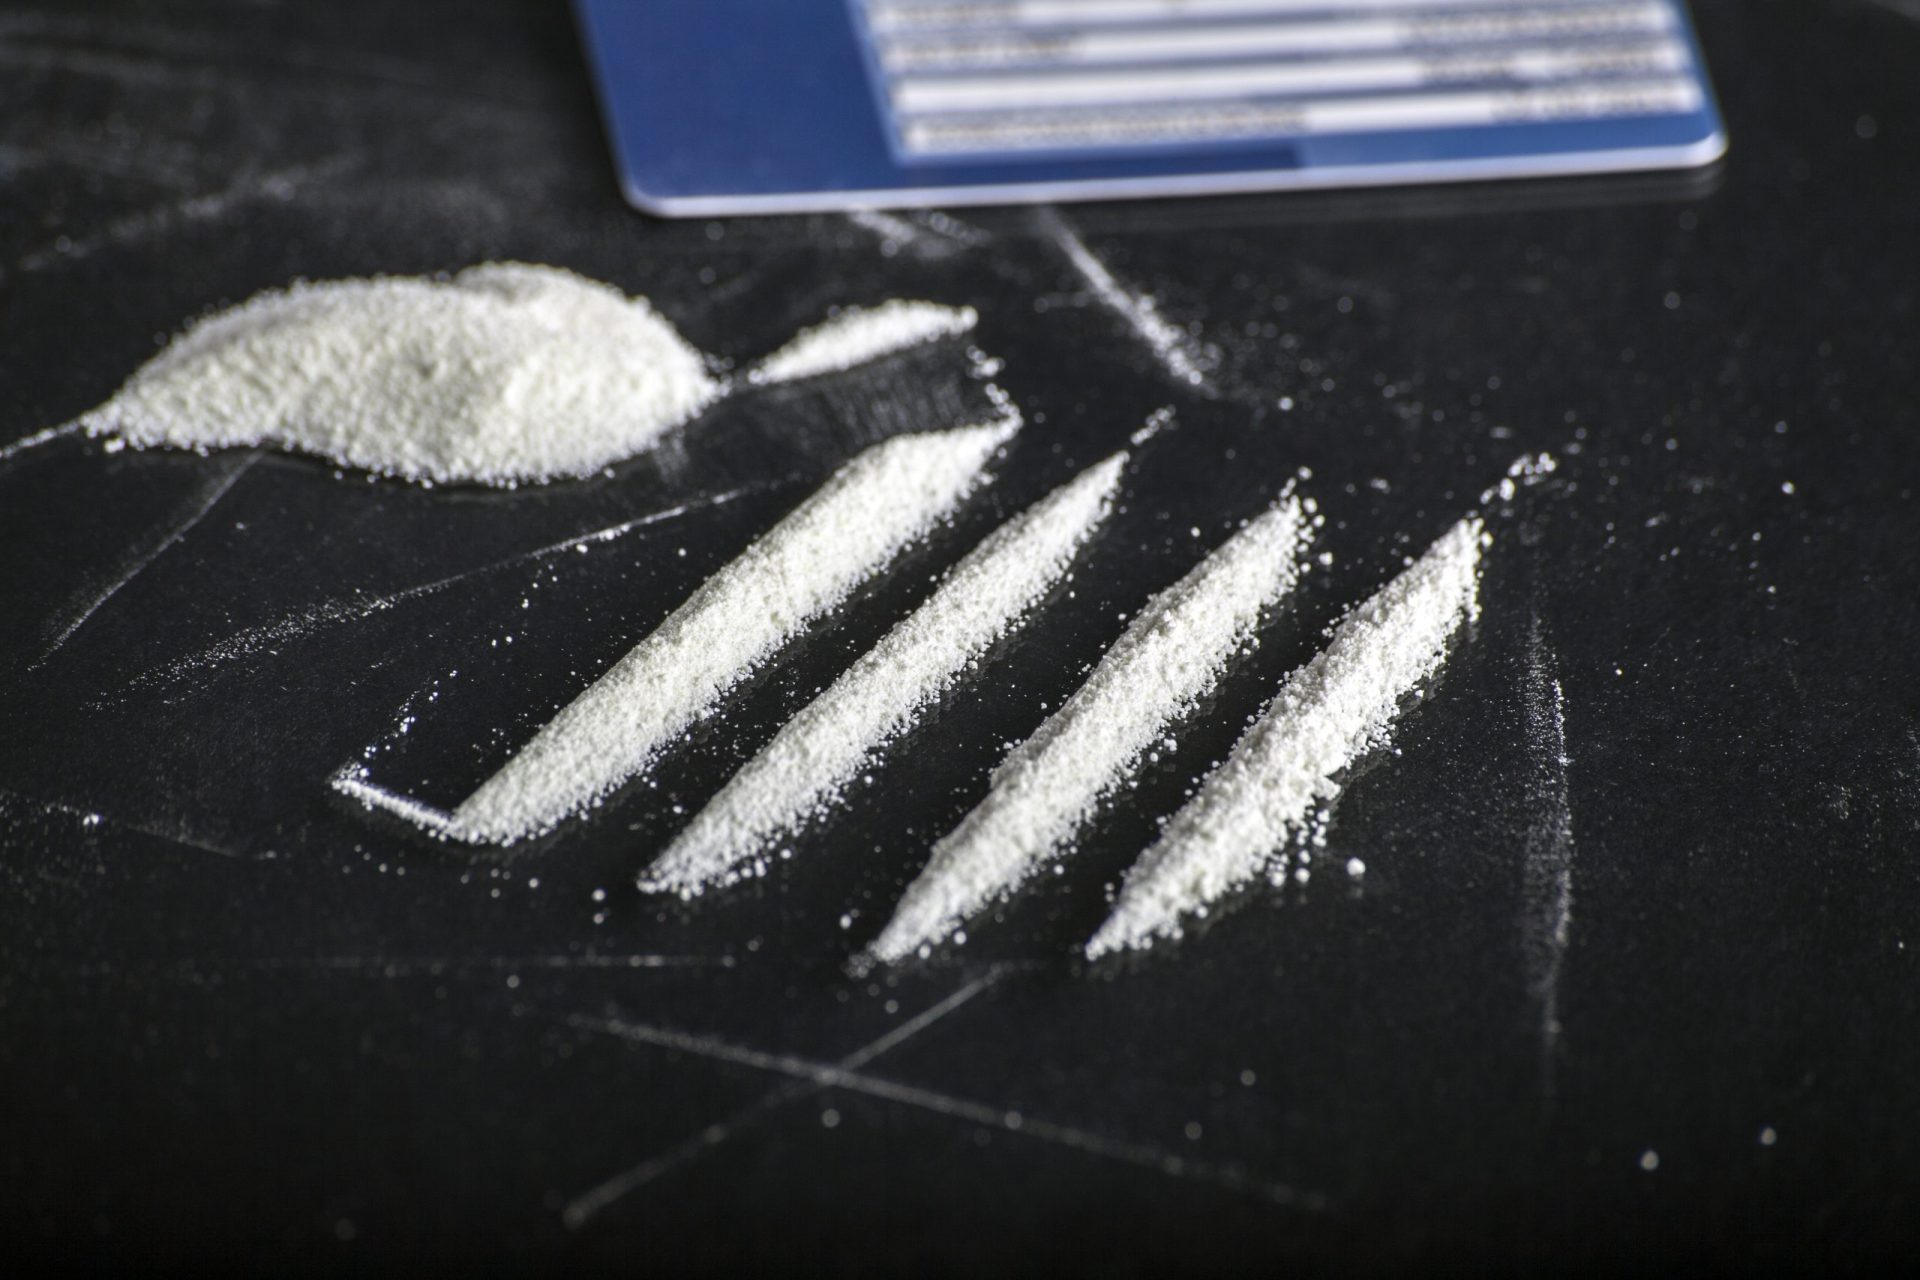 Mala com 27 Kg de cocaína apreendida pela PSP dentro de avião no aeroporto de Lisboa